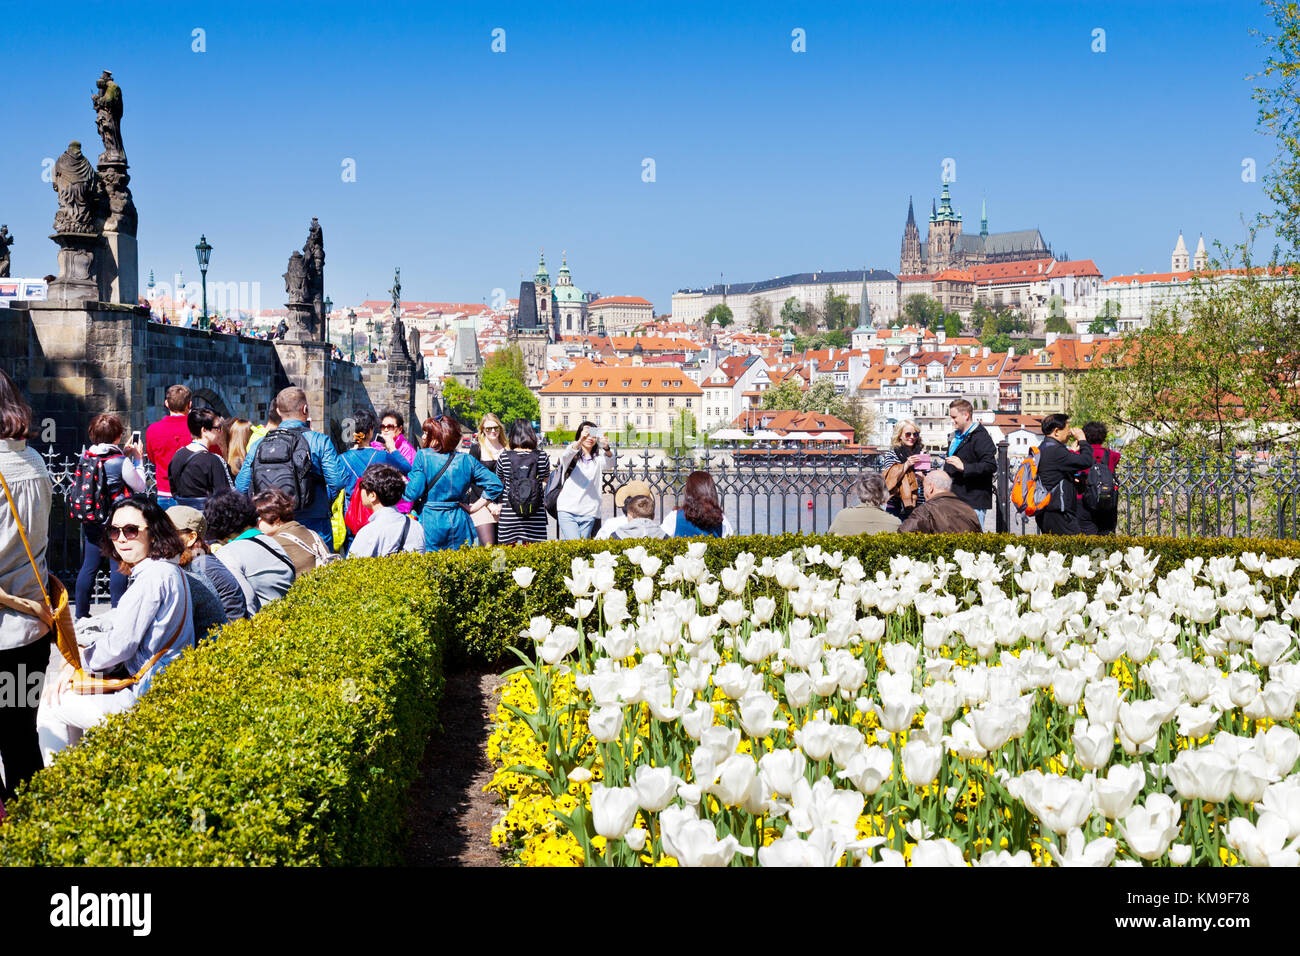 Place Krizovnicke, petite ville st., cathédrale Saint-Guy et château de Prague (UNESCO), Prague, République Tchèque - ville au printemps avec des tulipes fleurs Banque D'Images